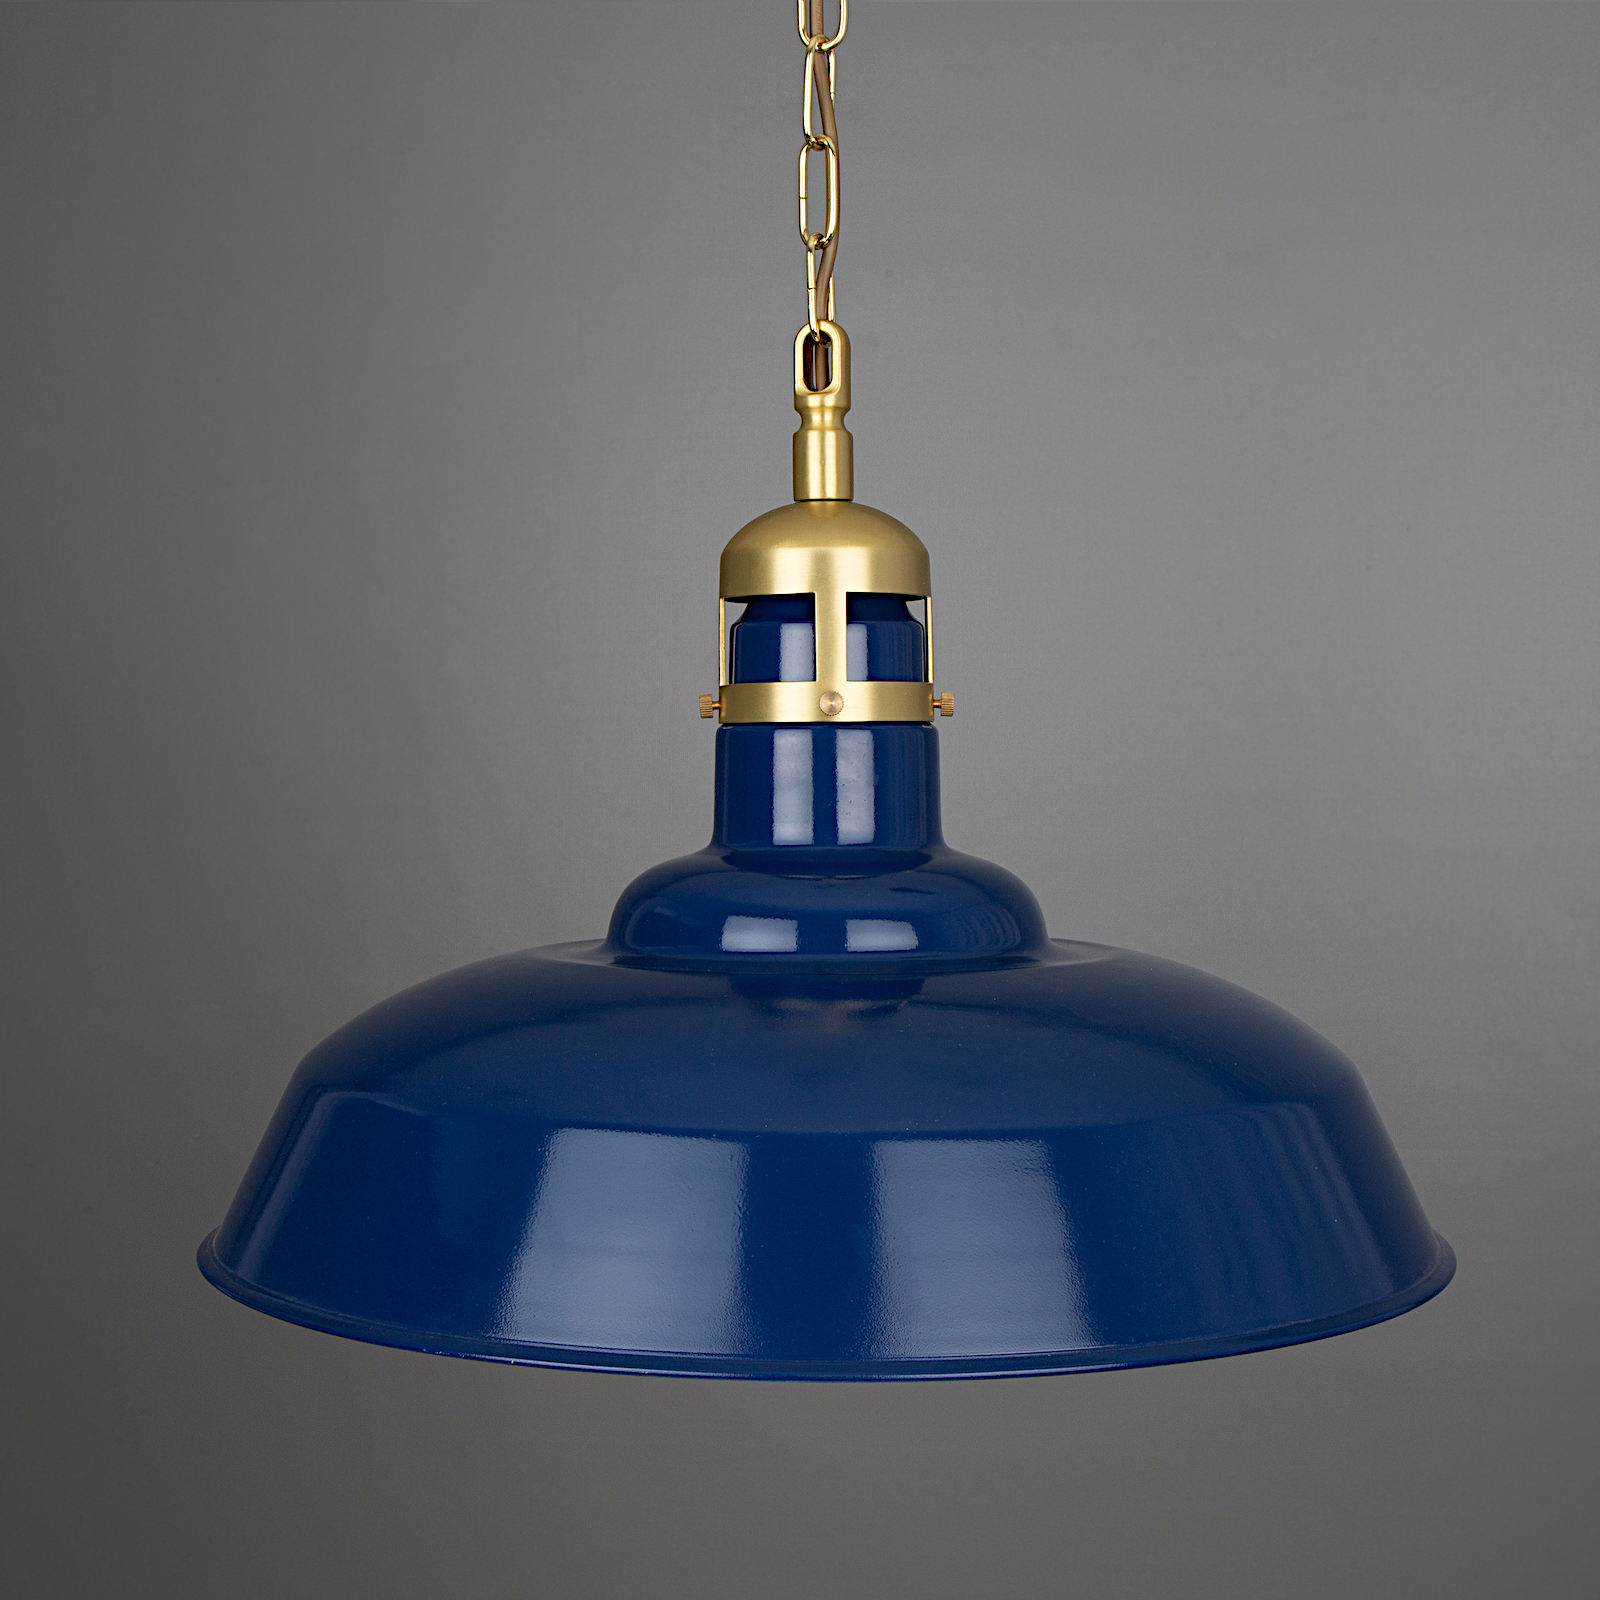 Große Industriestil-Pendelleuchte, blau mit Messing-Details, Ø 50 cm: Messing satiniert